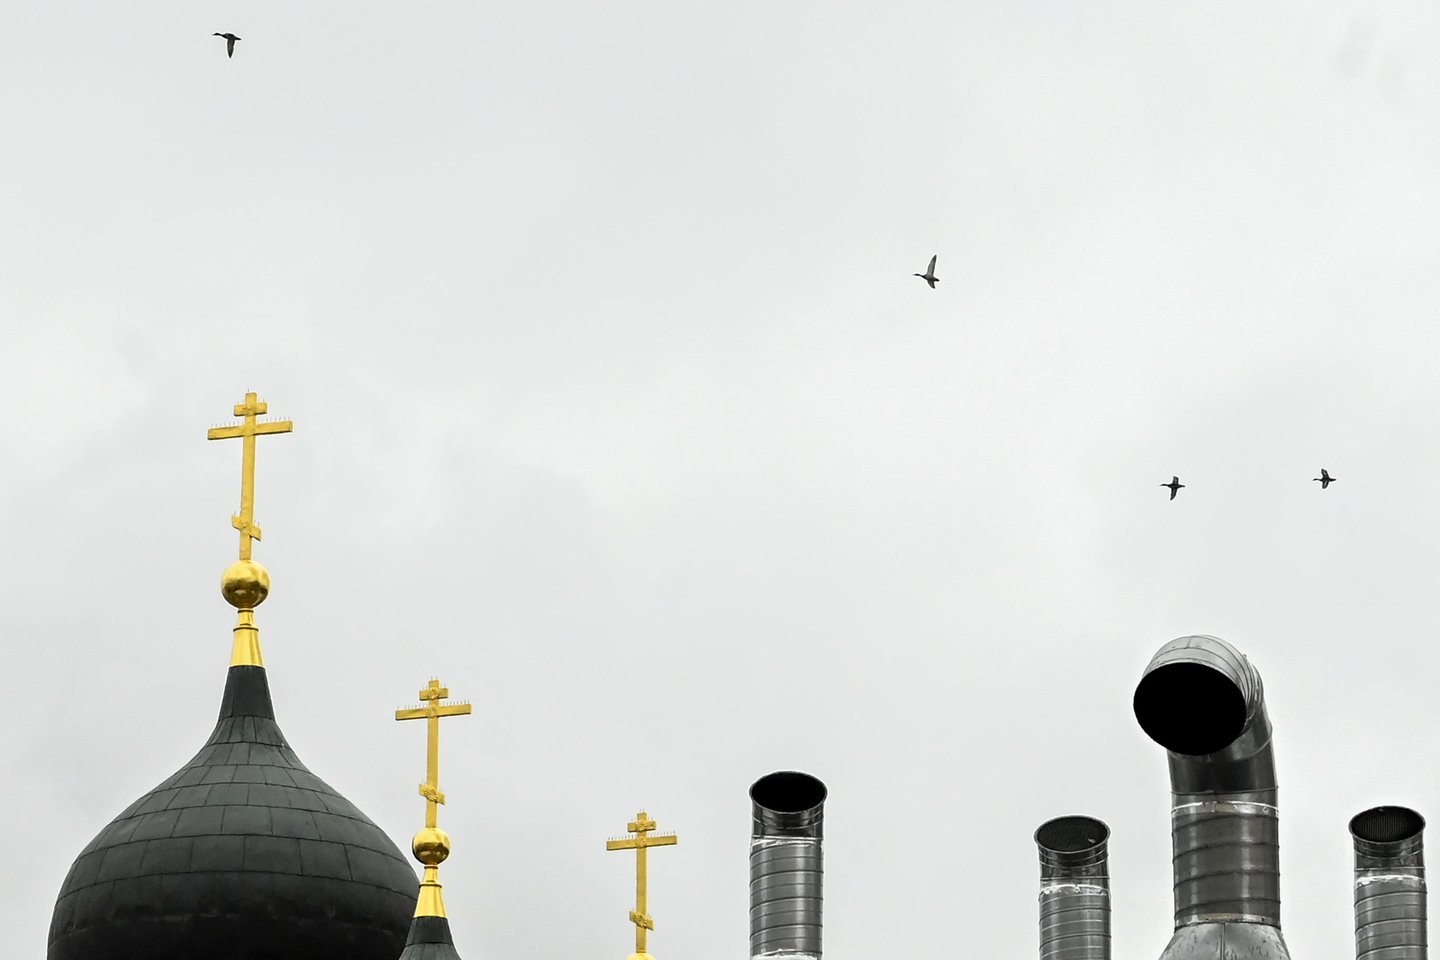 Rusijos Ortodoksų Bažnyčia (ROB) ketvirtadienį nutraukė ryšius su stačiatikių bažnyčios Aleksandrijoje vadovu dėl jo sprendimo pripažinti naują nepriklausomą Ukrainos Ortodoksų Bažnyčią (UOB).<br>AFP/Scanpix nuotr.